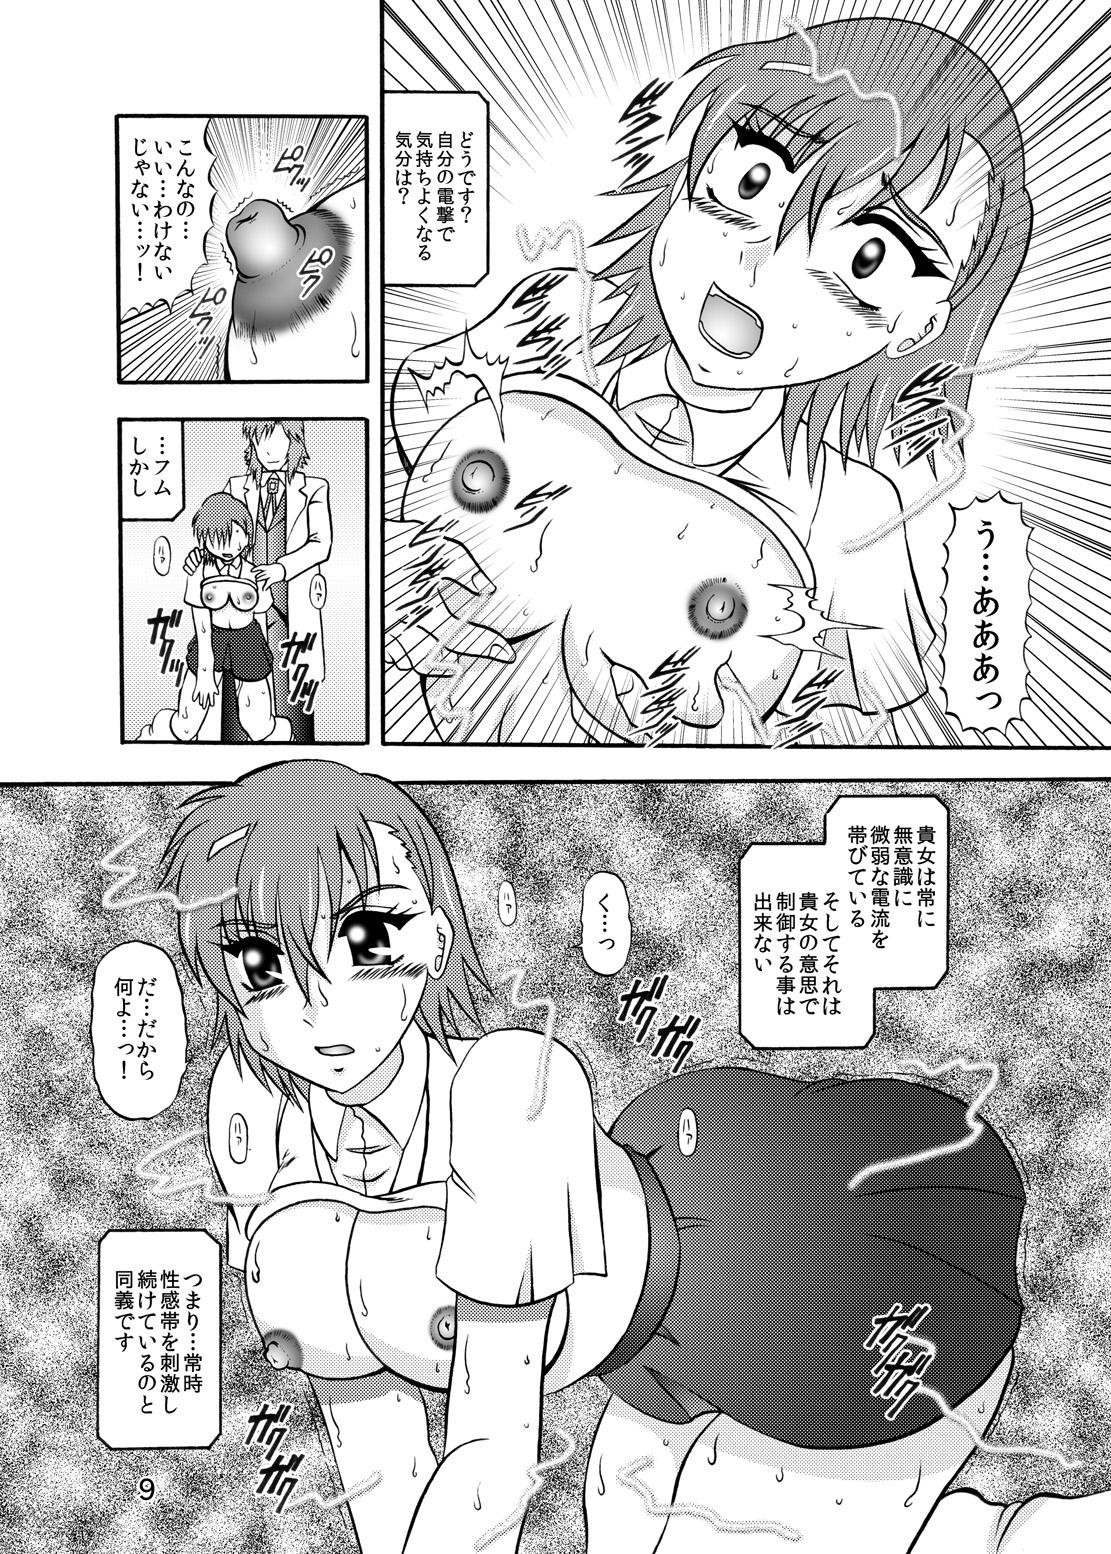 Freeporn Inyoku Kaizou: Misaka Mikoto - Toaru kagaku no railgun Dicksucking - Page 7